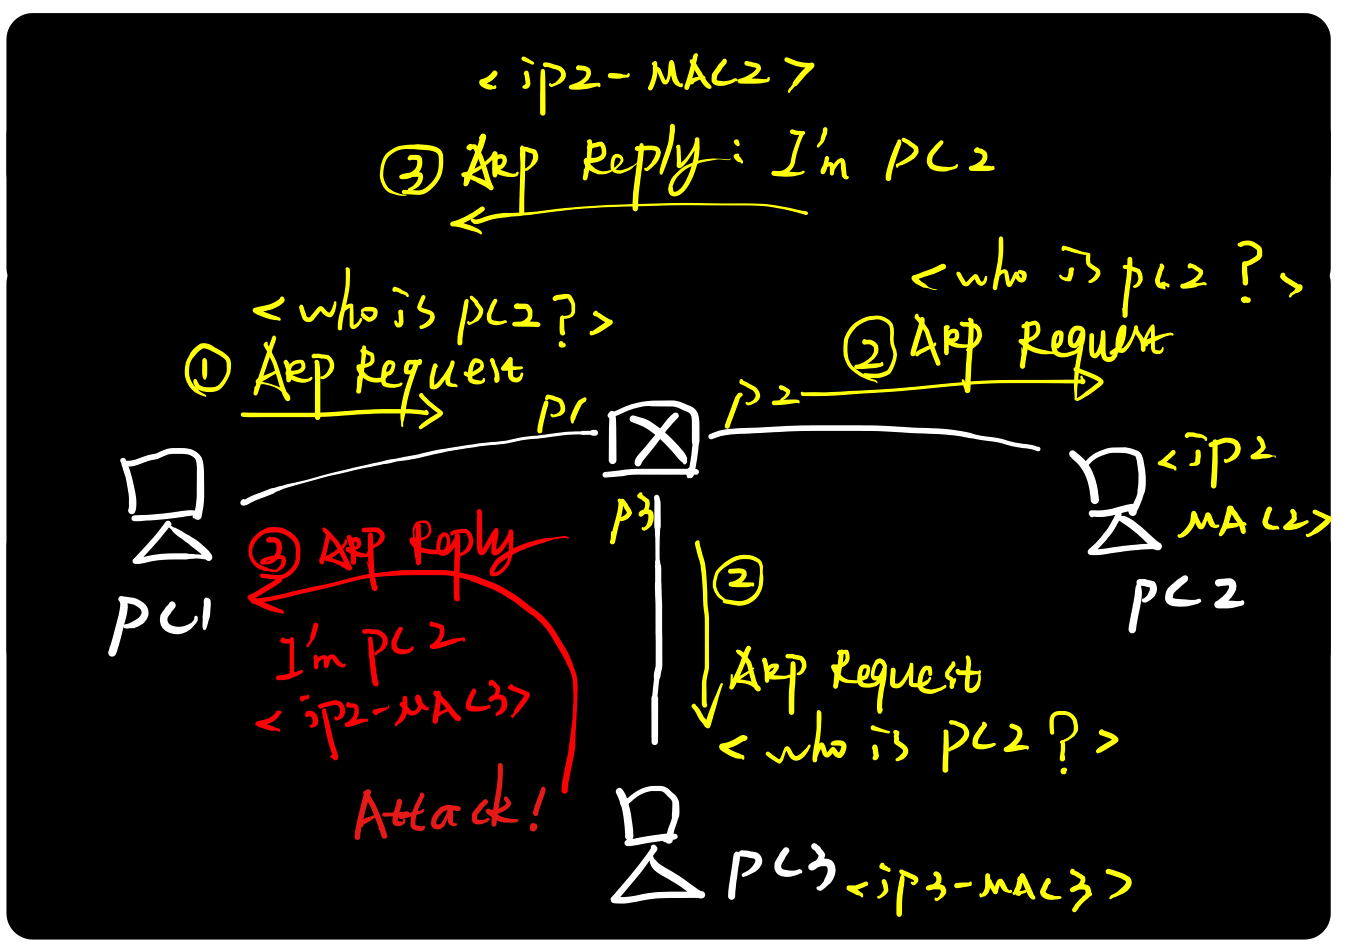 图解ARP协议（二）ARP攻击原理与实践_ARP协议_03